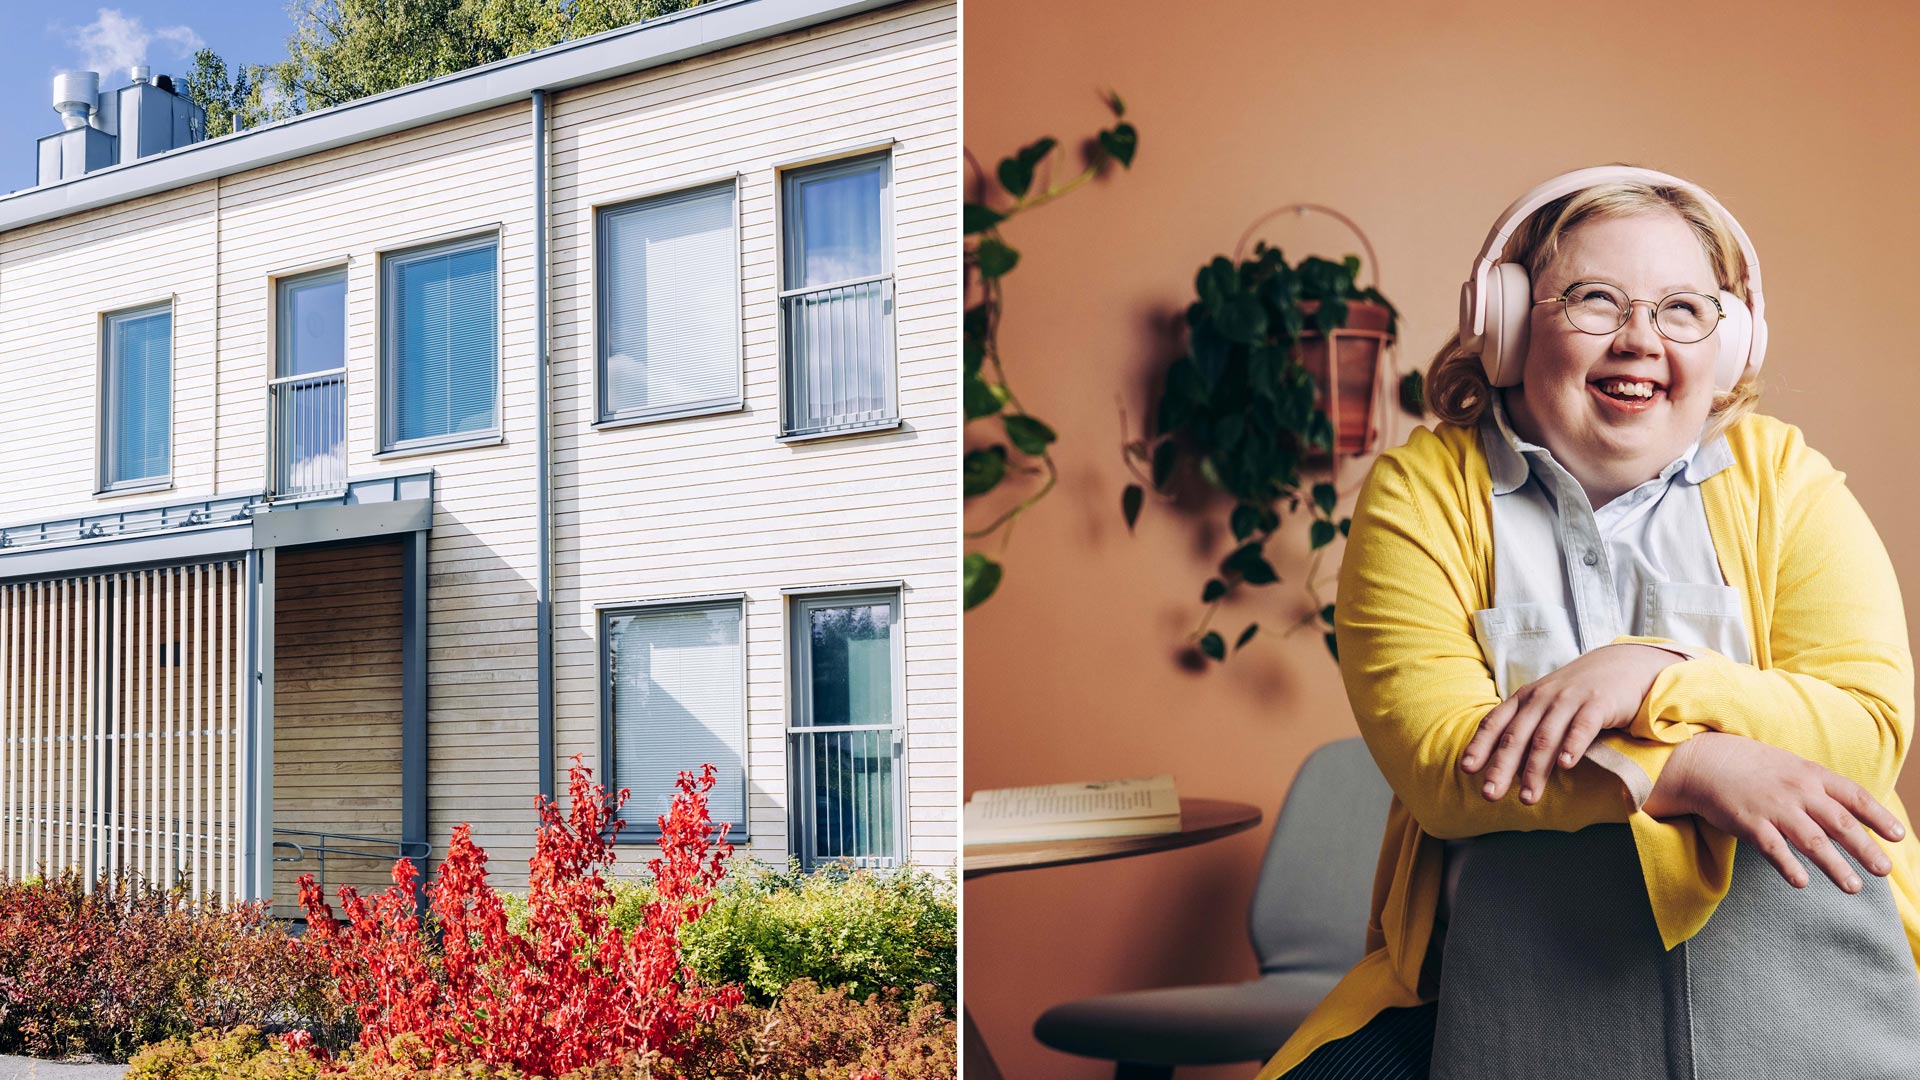 Kuvapari, jossa toisessa kuvassa on kaksikerroksinen asuintalo ja toisessa hymyilevä nuori nainen keltaisessa neuleessa.